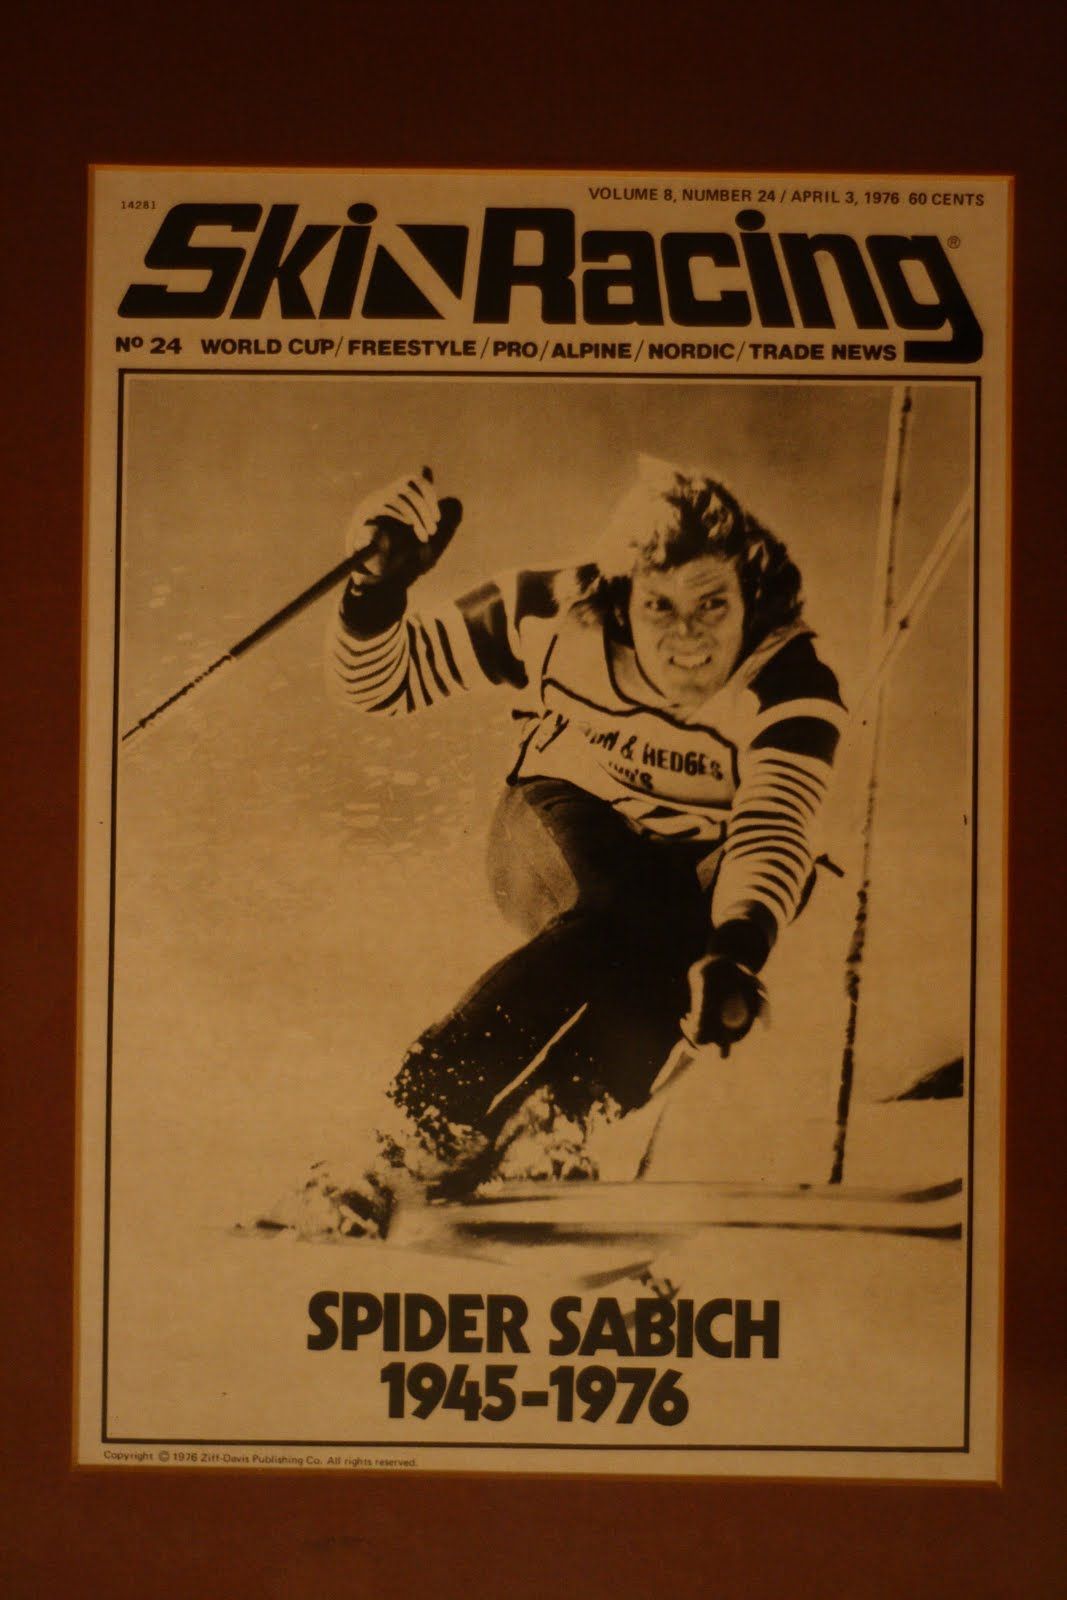 Spider Sabich